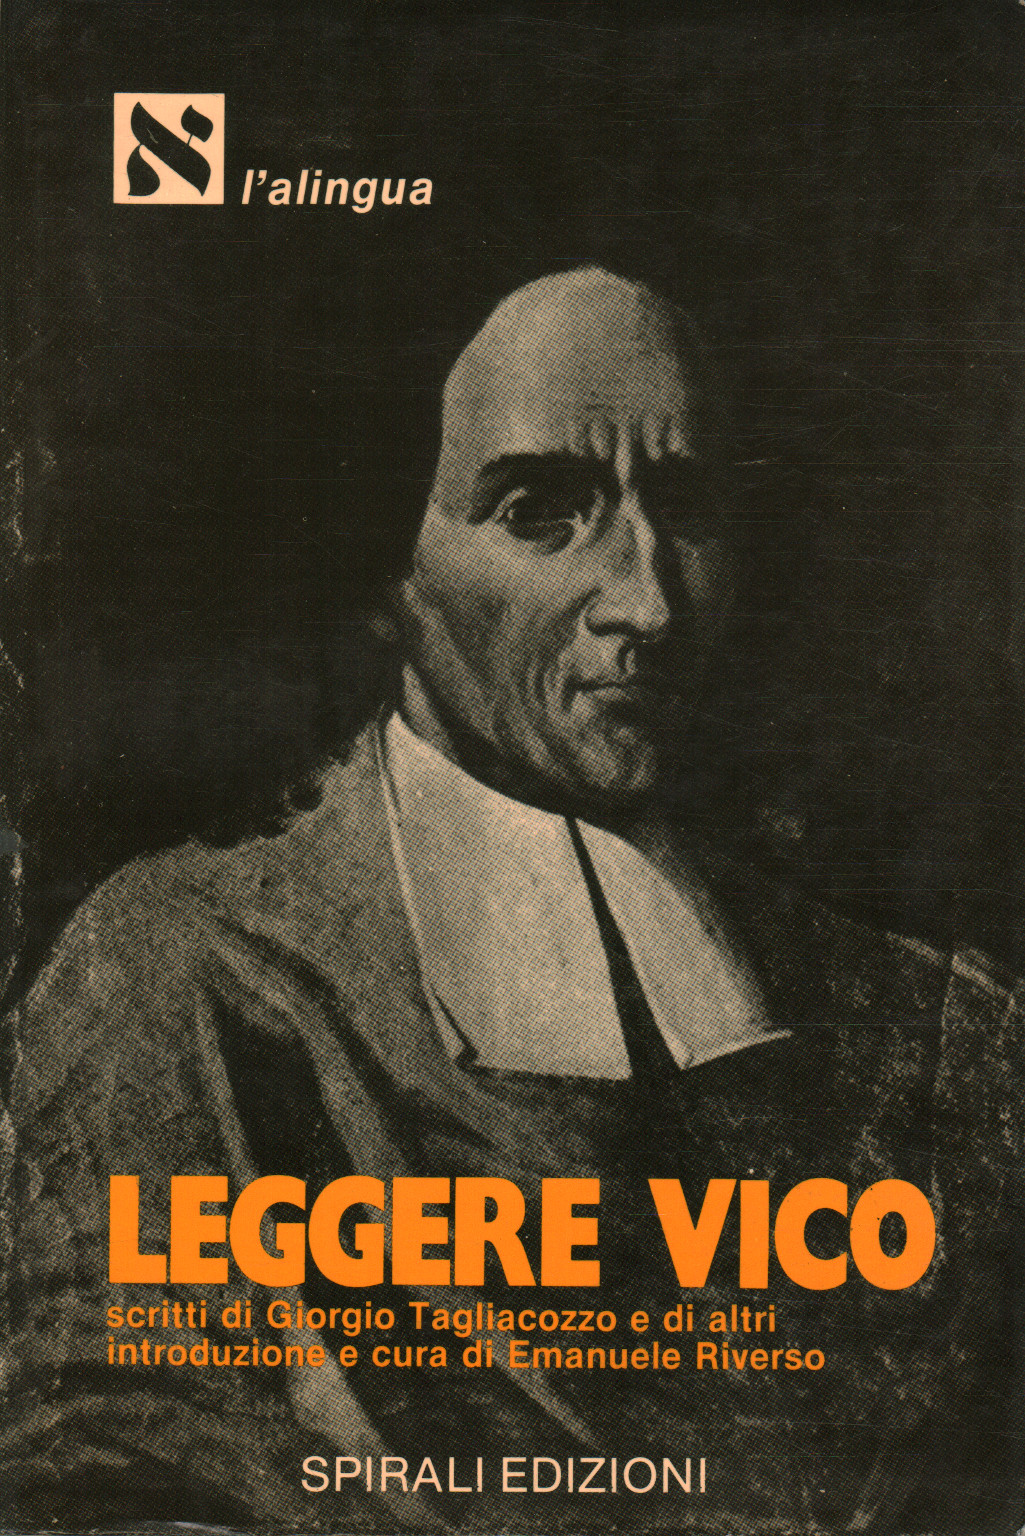 Lire Vico, Emanuele Riverso